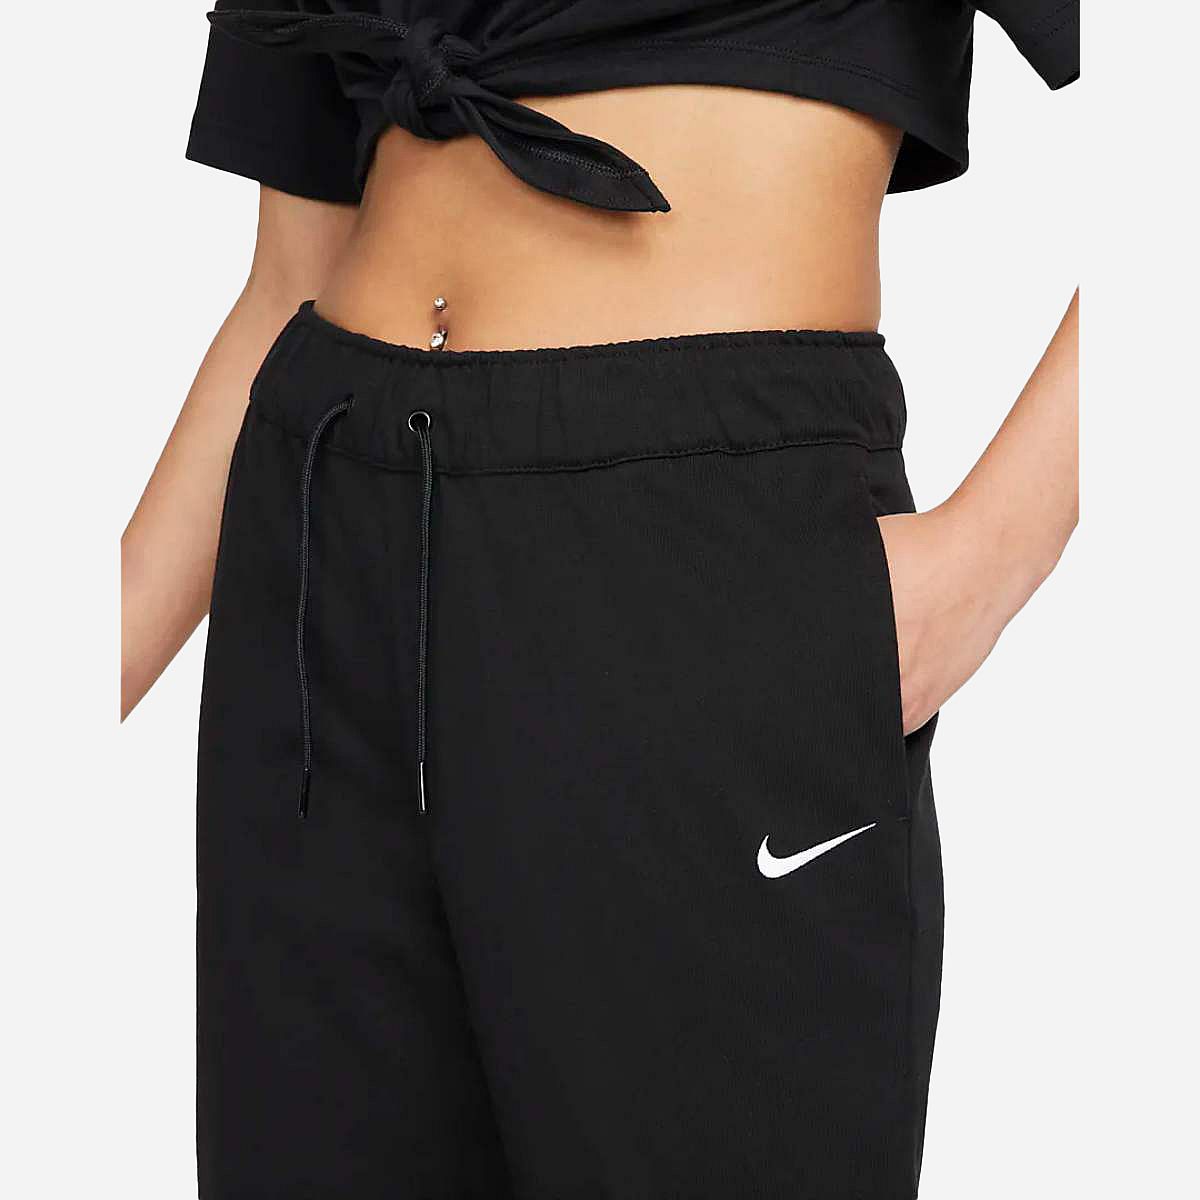 AN302479 Nike Sportswear Women's Jersey Jogg